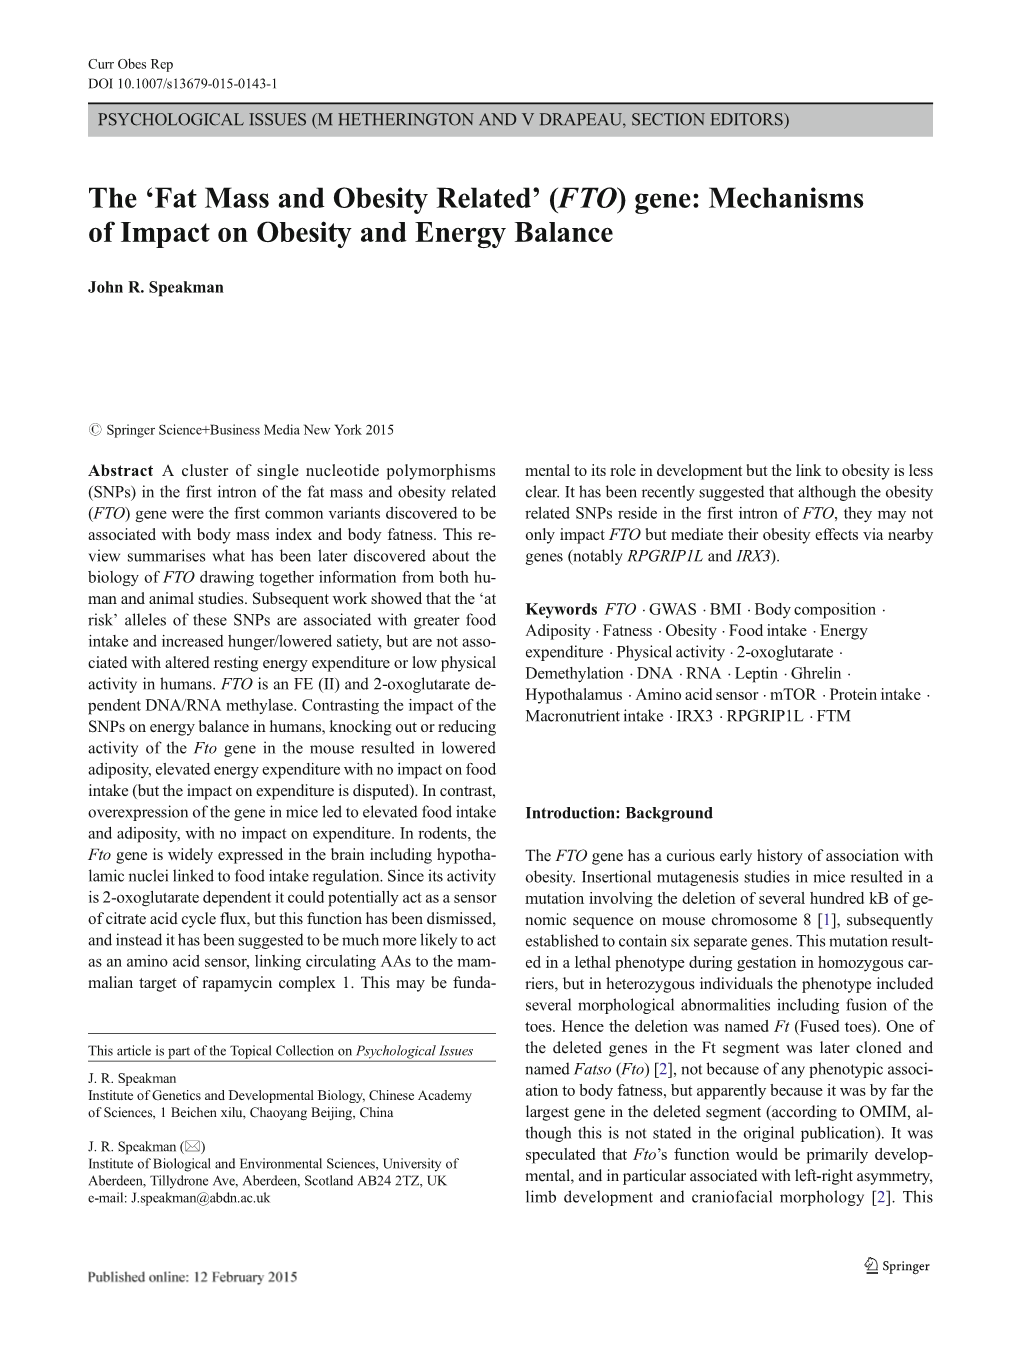 (FTO) Gene: Mechanisms of Impact on Obesity and Energy Balance